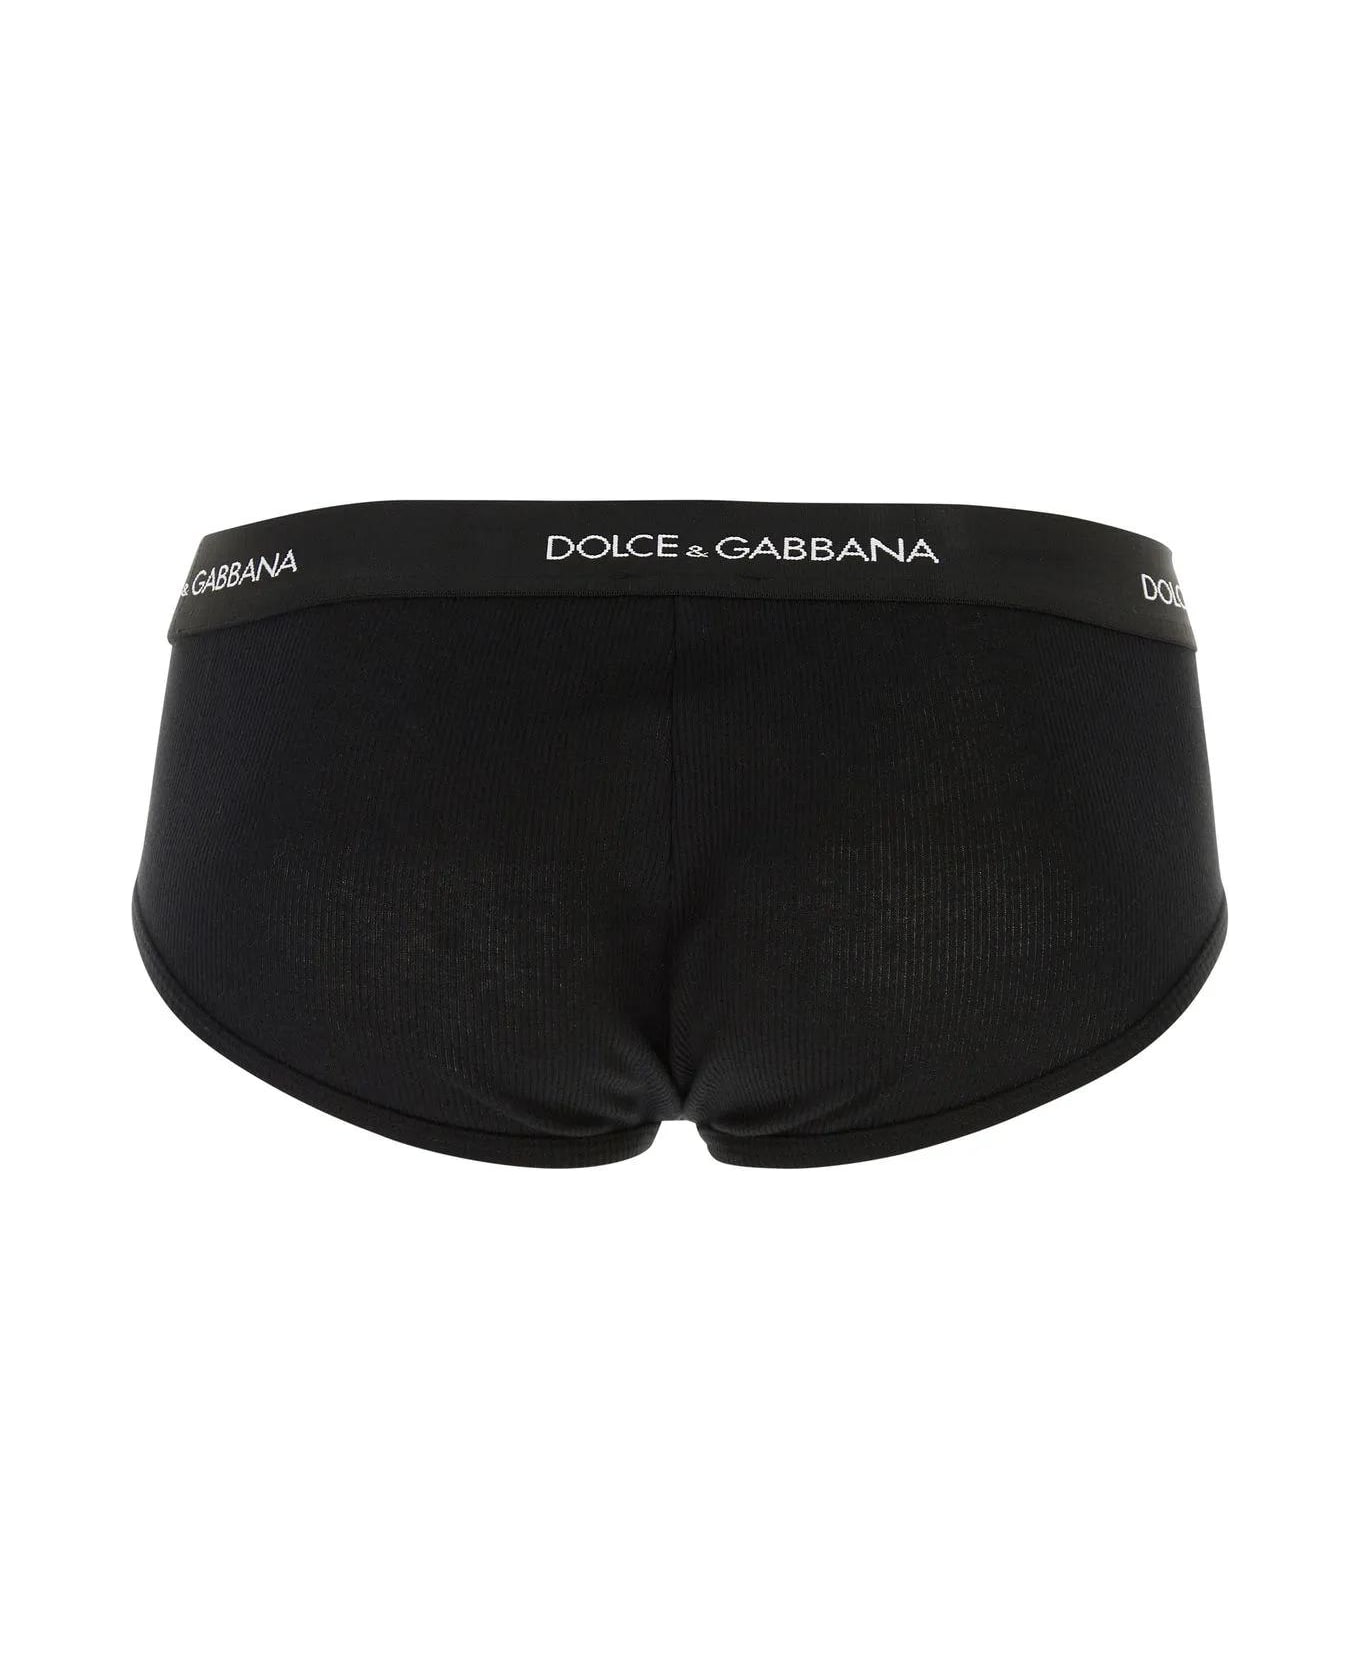 Dolce & Gabbana Slip - BLACK ショーツ